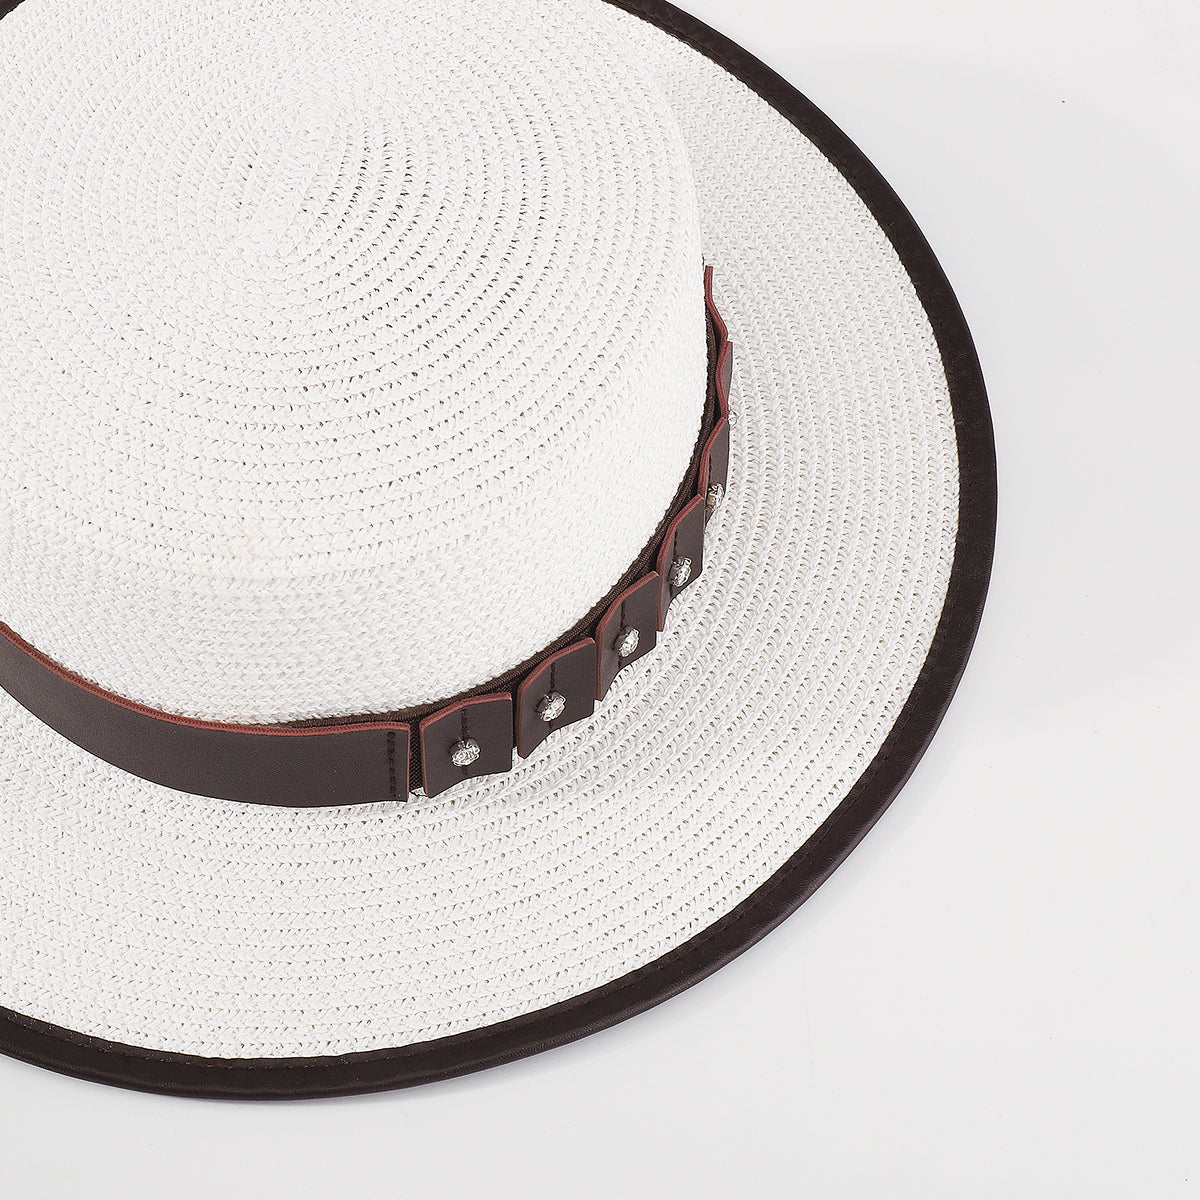 Q0143 Vegan Leather Trim Panama Hat